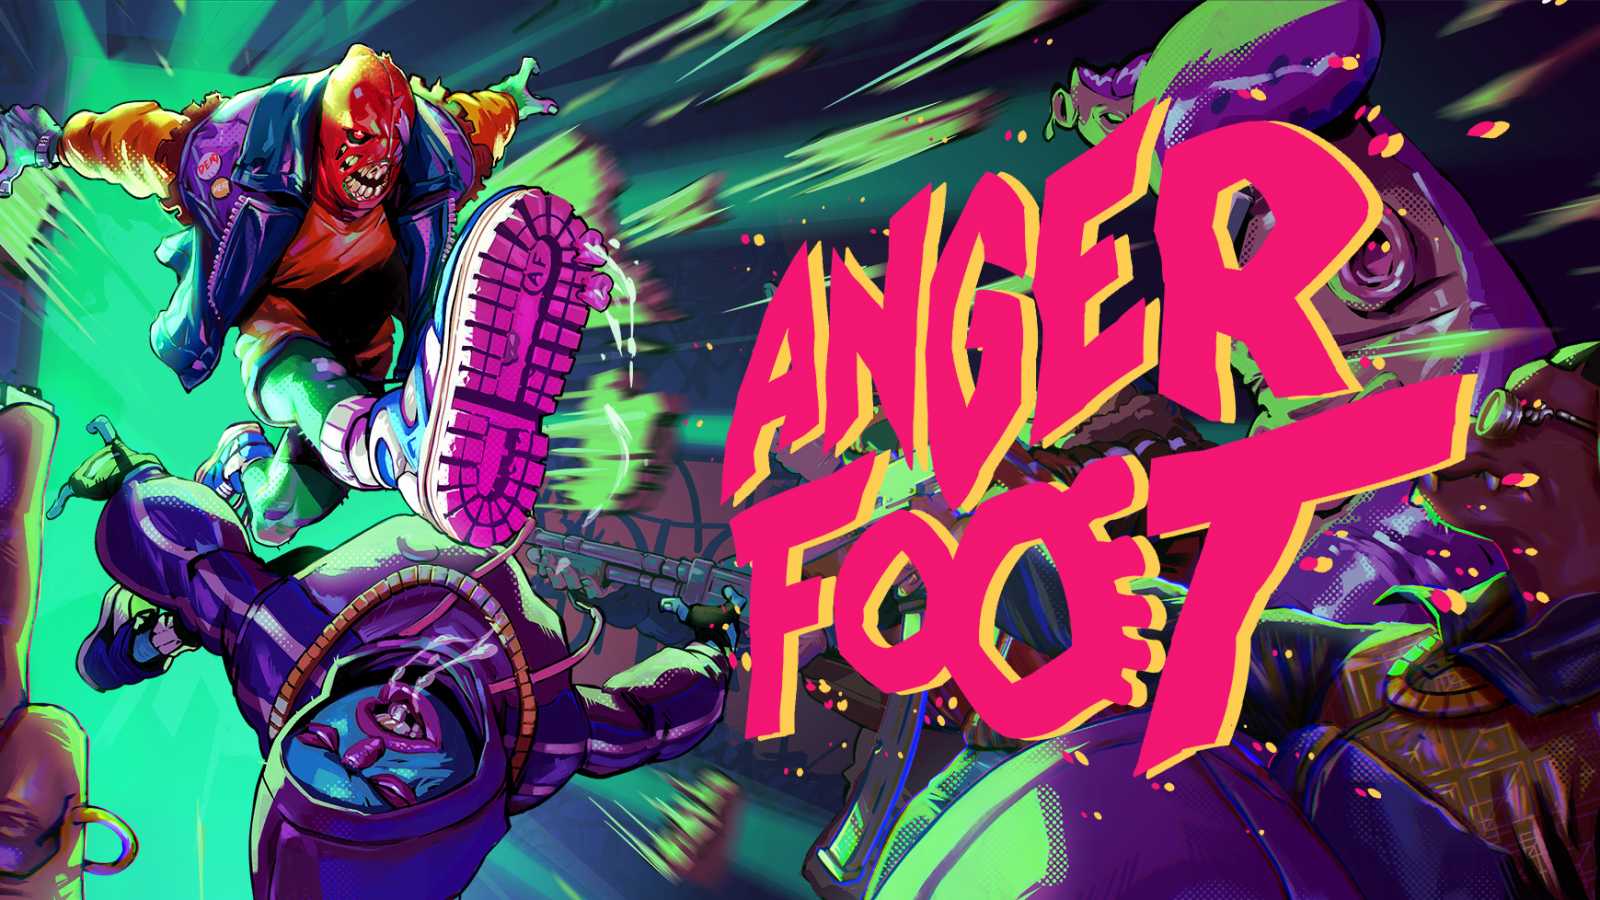 Anger Foot je šílená střílečka plná smrtících kopanců. Hru si můžete vyzkoušet už nyní